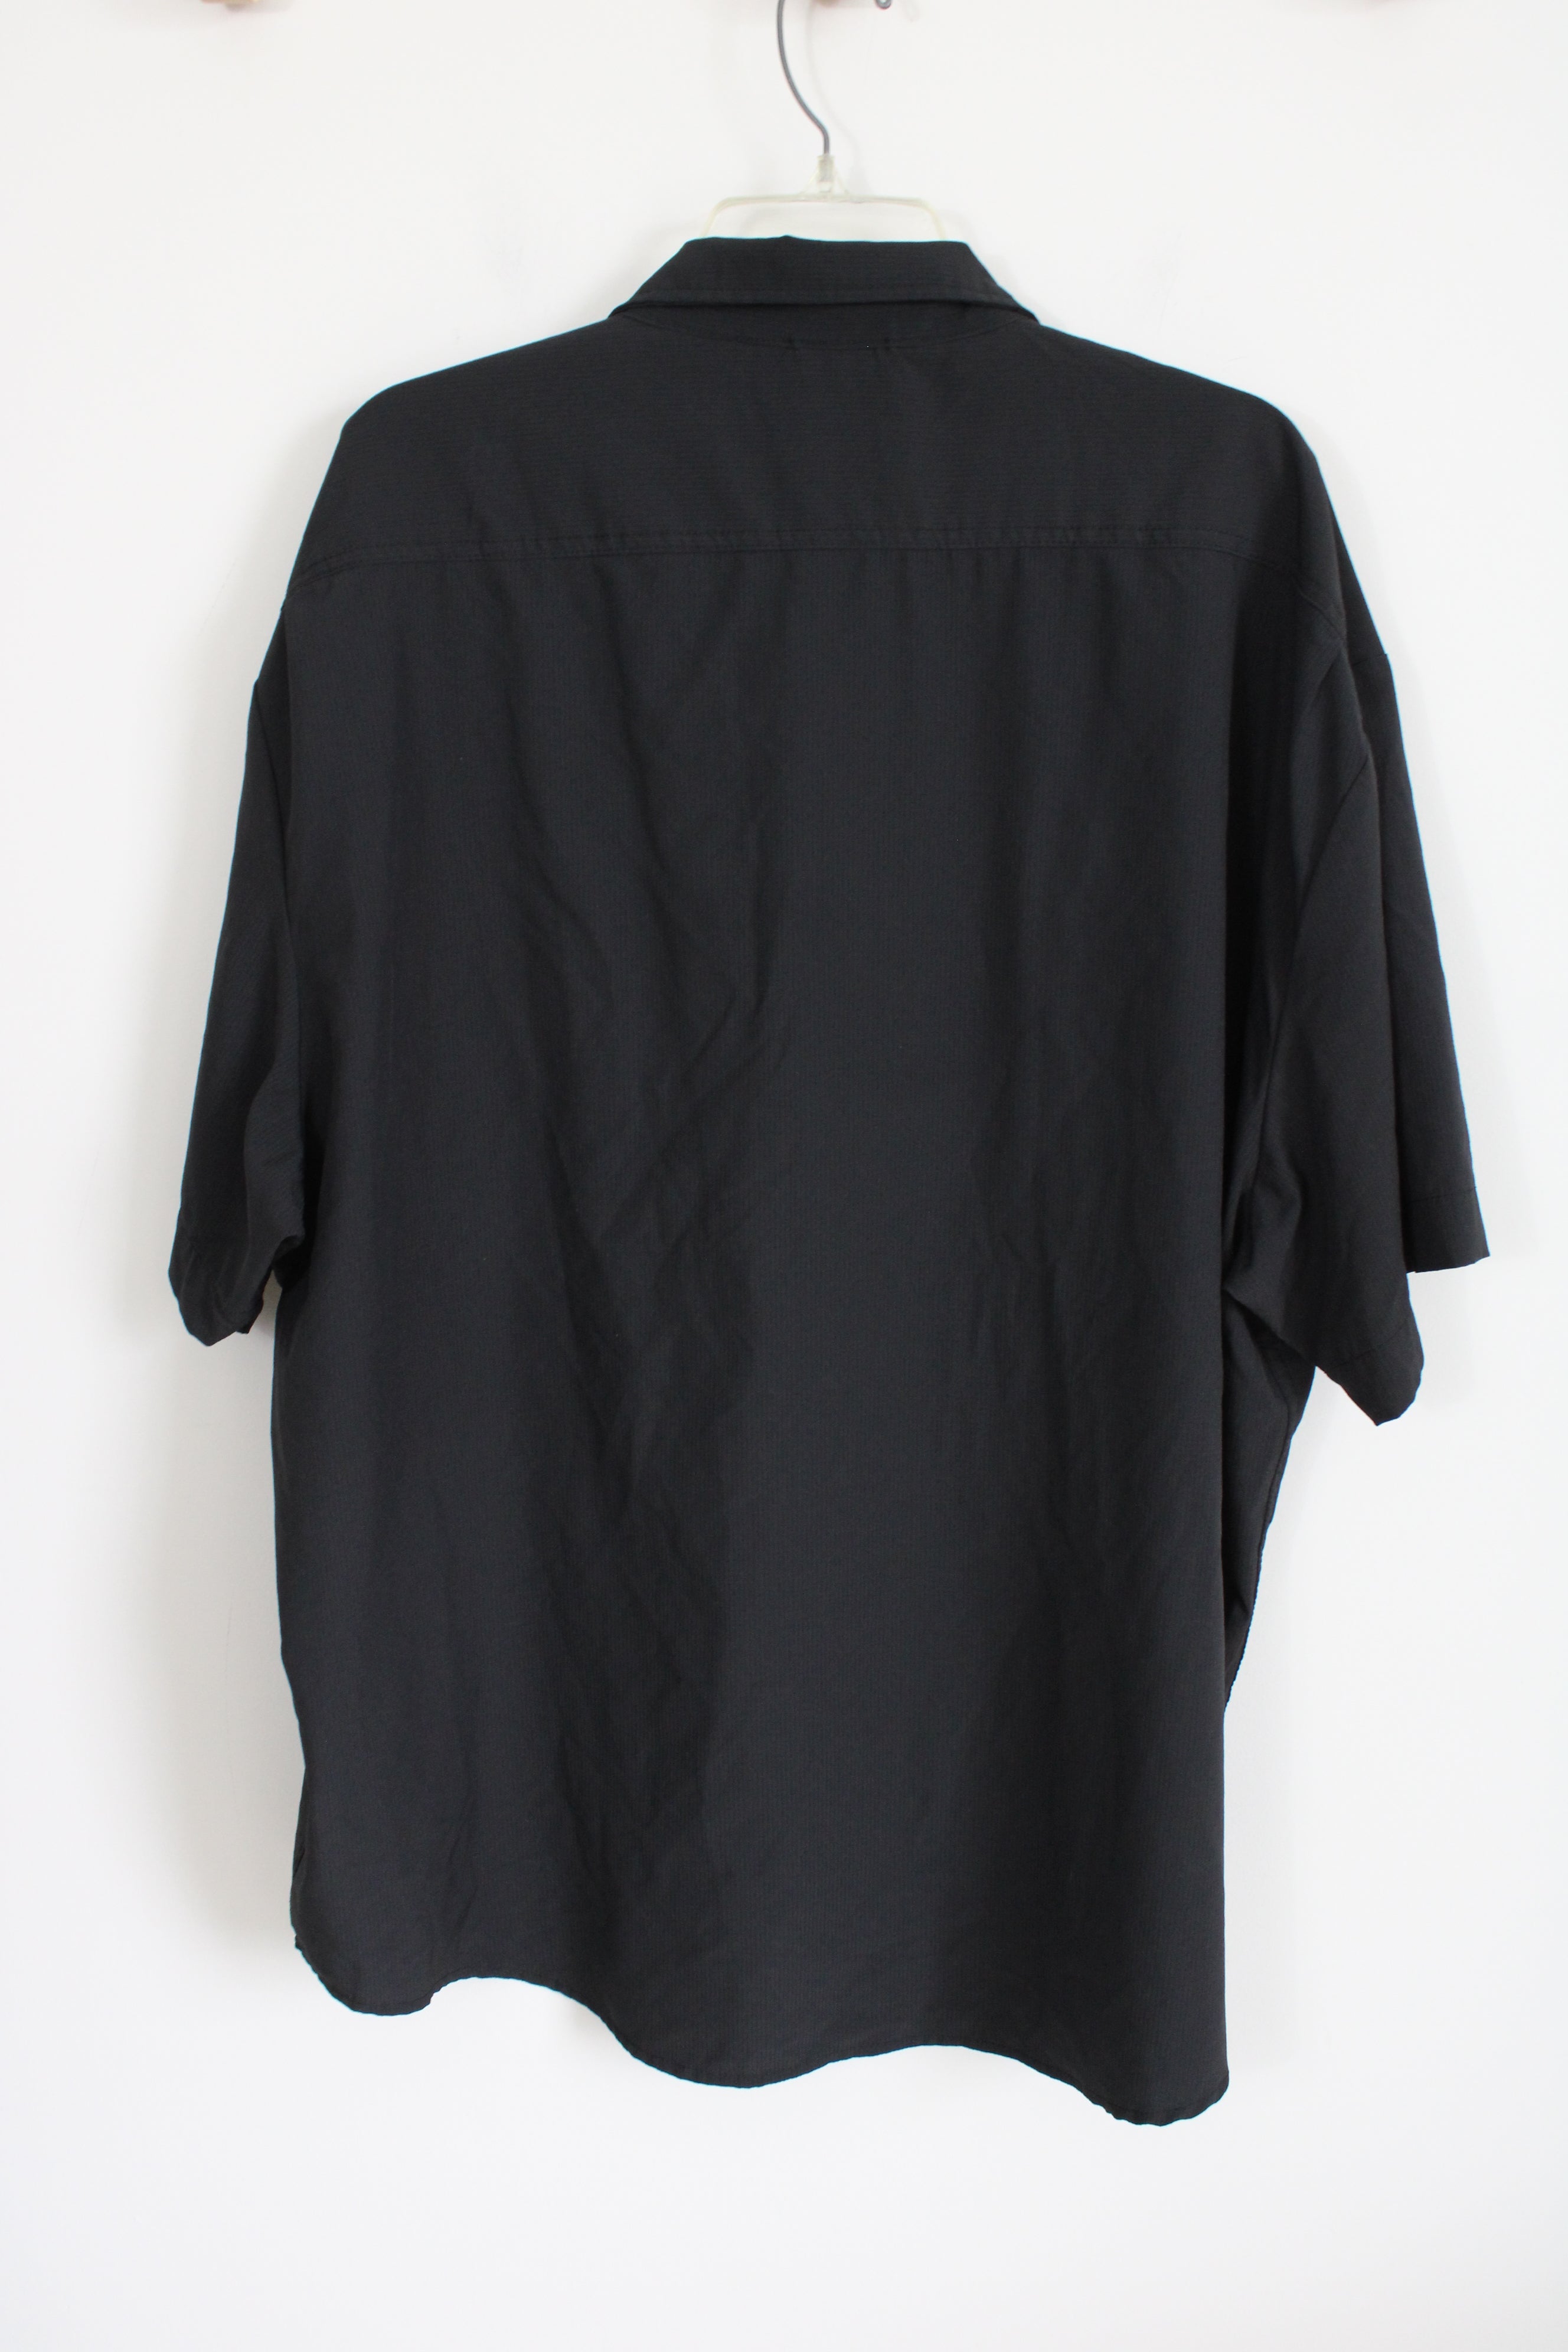 Kenneth Cole New York Regular fit Black Lightweight Short Sleeved Button Down Shirt | 4X